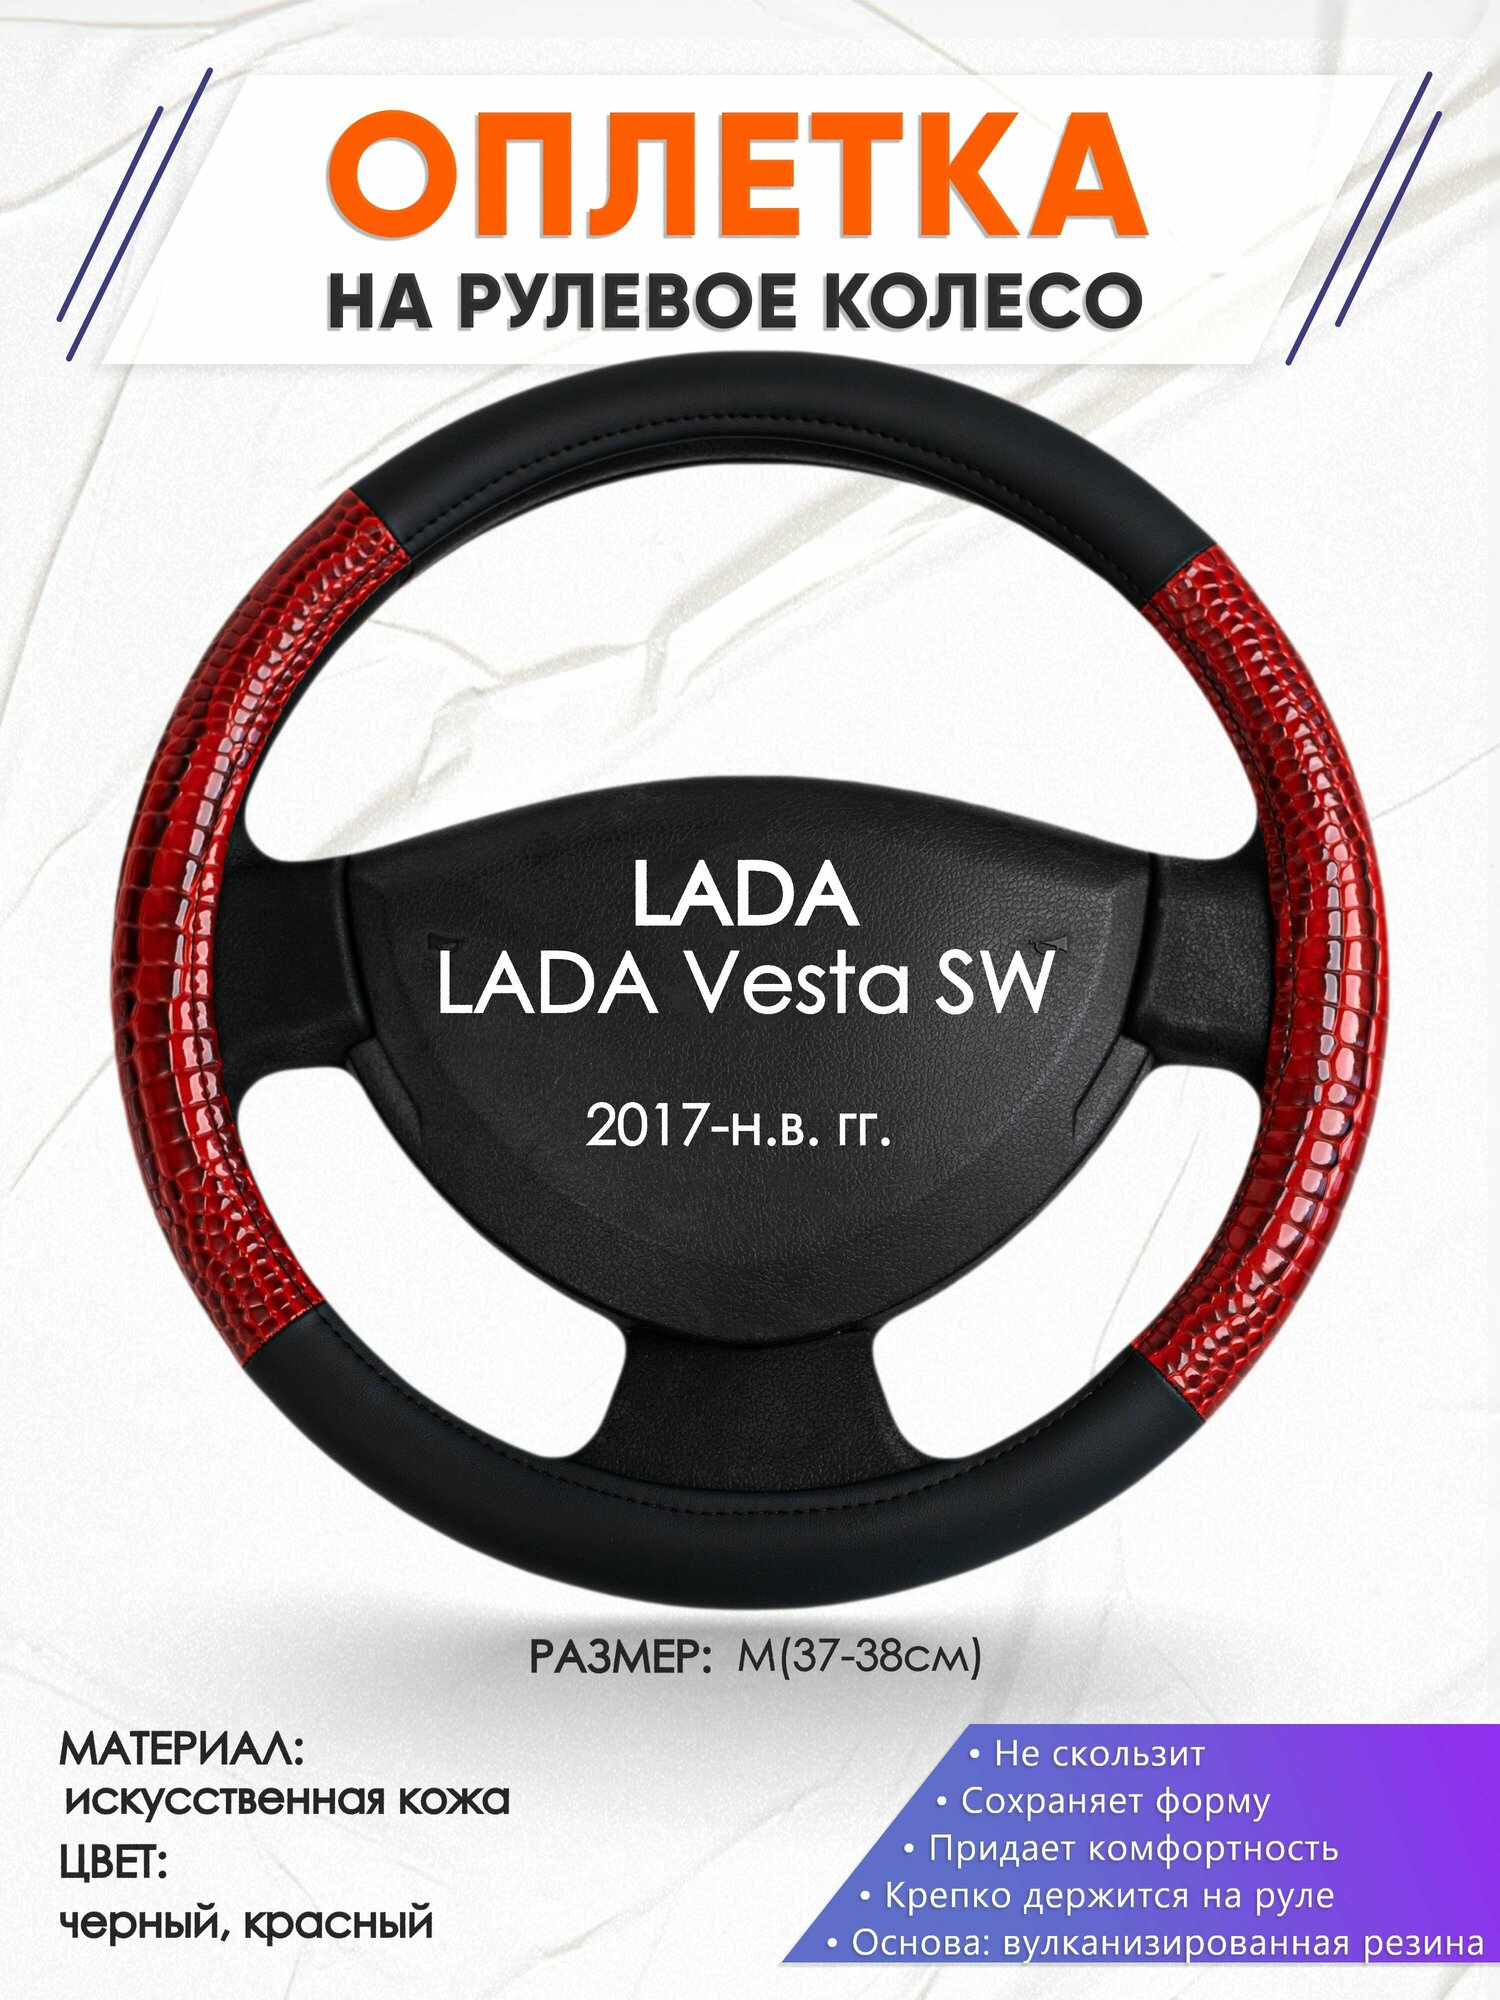 Оплетка наруль для LADA Vesta SW(Лада Веста св) 2017-н. в. годов выпуска, размер M(37-38см), Искусственная кожа 16